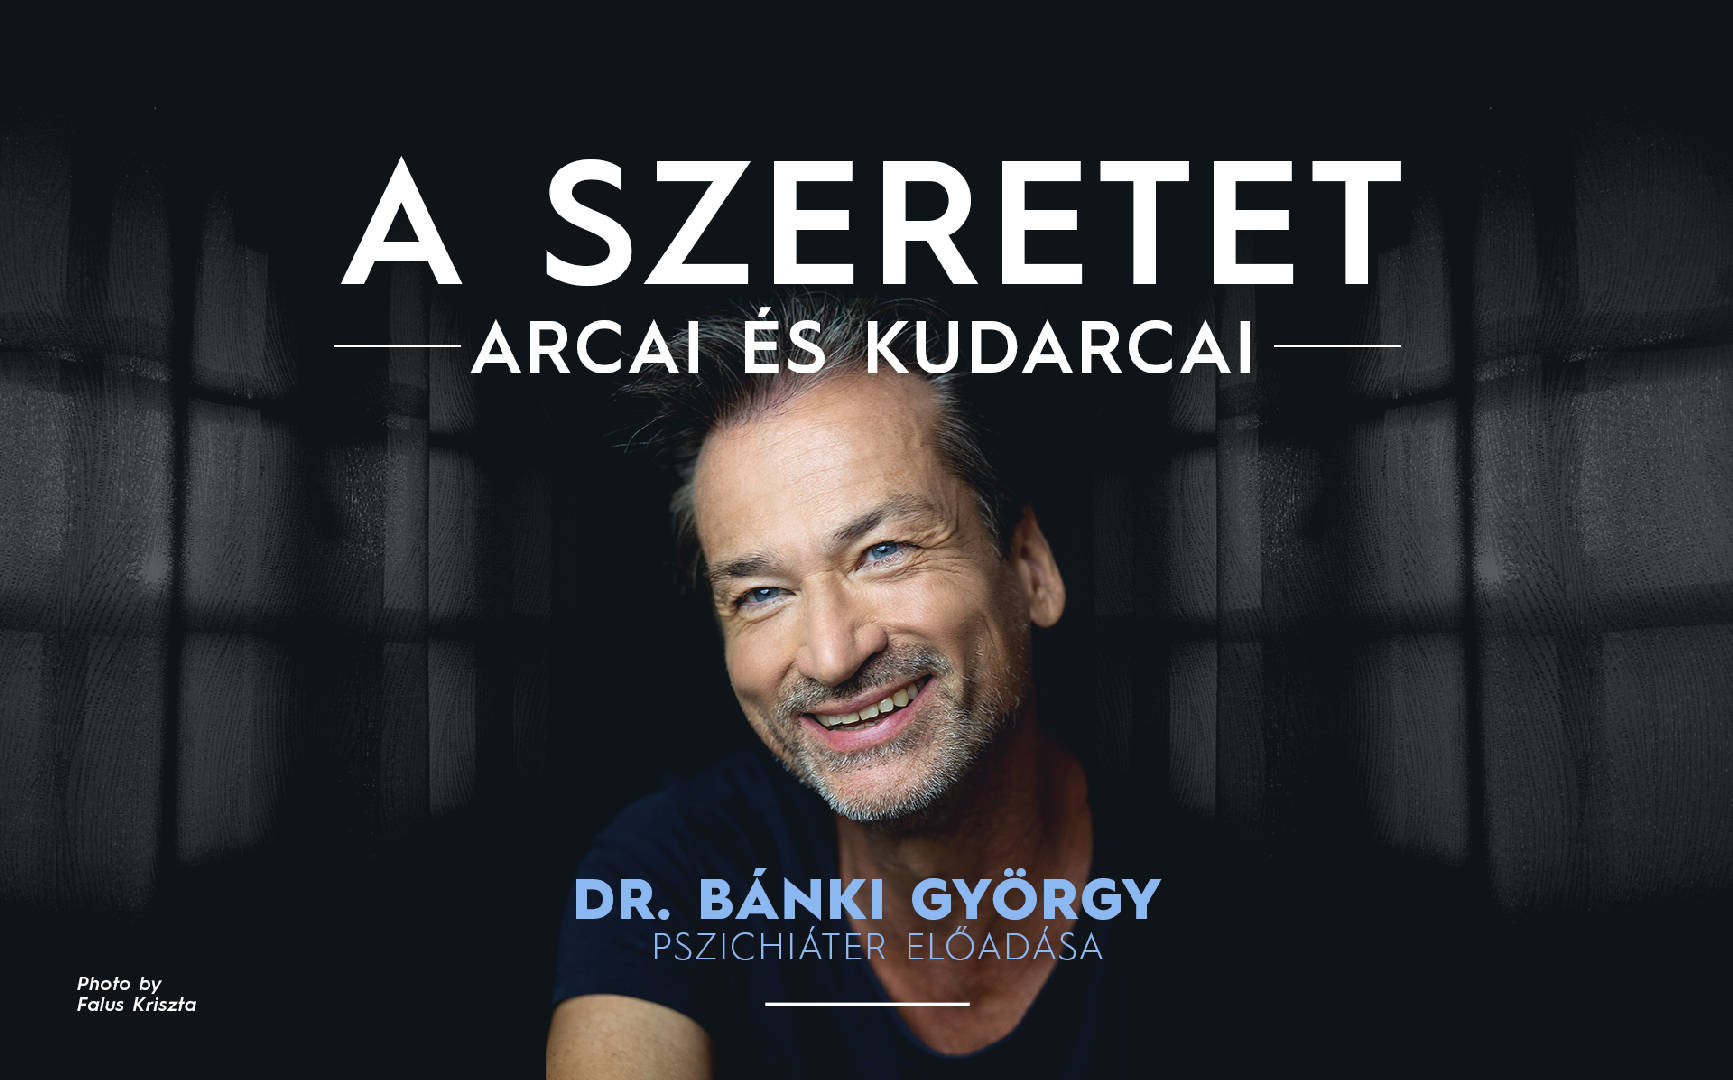 A szeretet arcai és kudarcai - ÉRD - Dr. Bánki György pszichiáter előadása